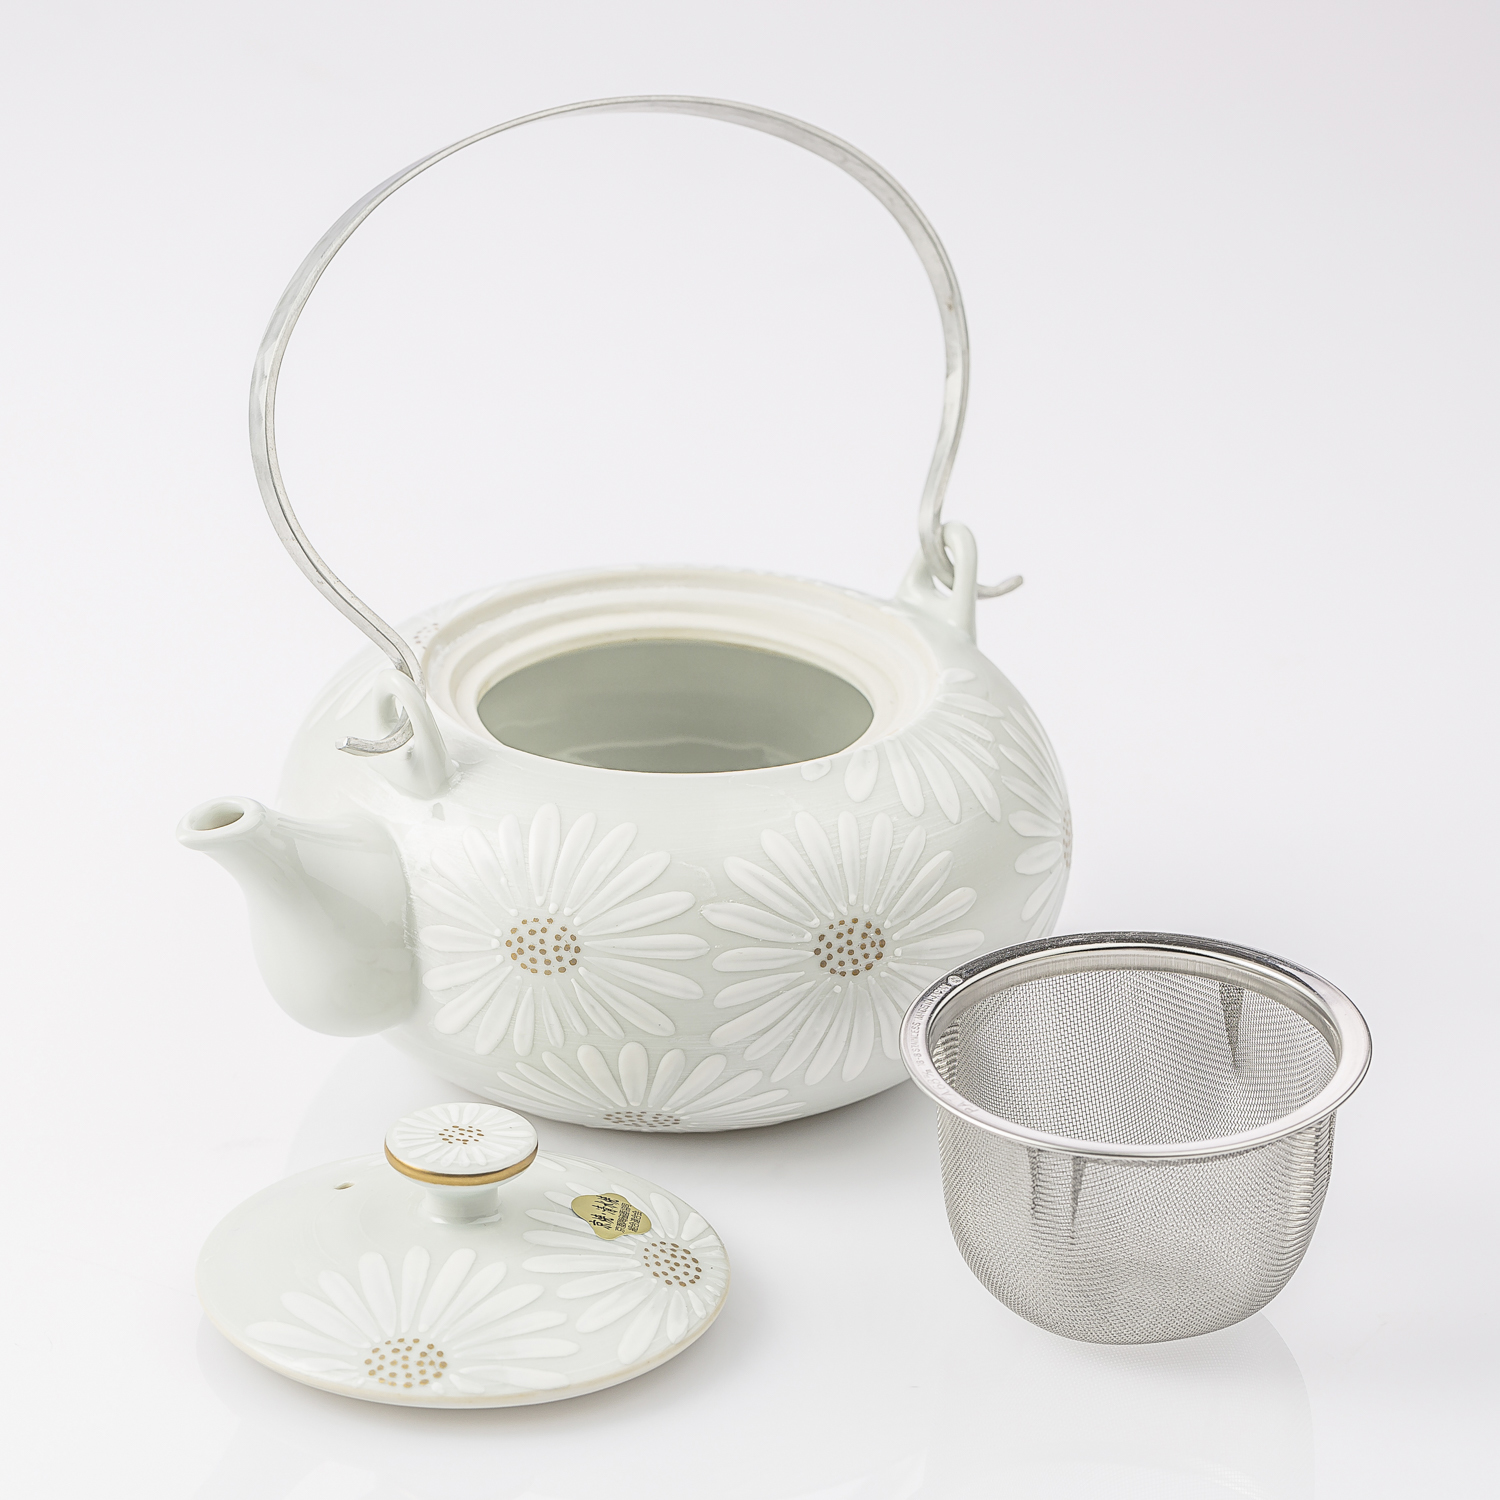 日本原产T.NISHIKAWA 手工京烧清水烧白菊陶瓷茶壶 白色